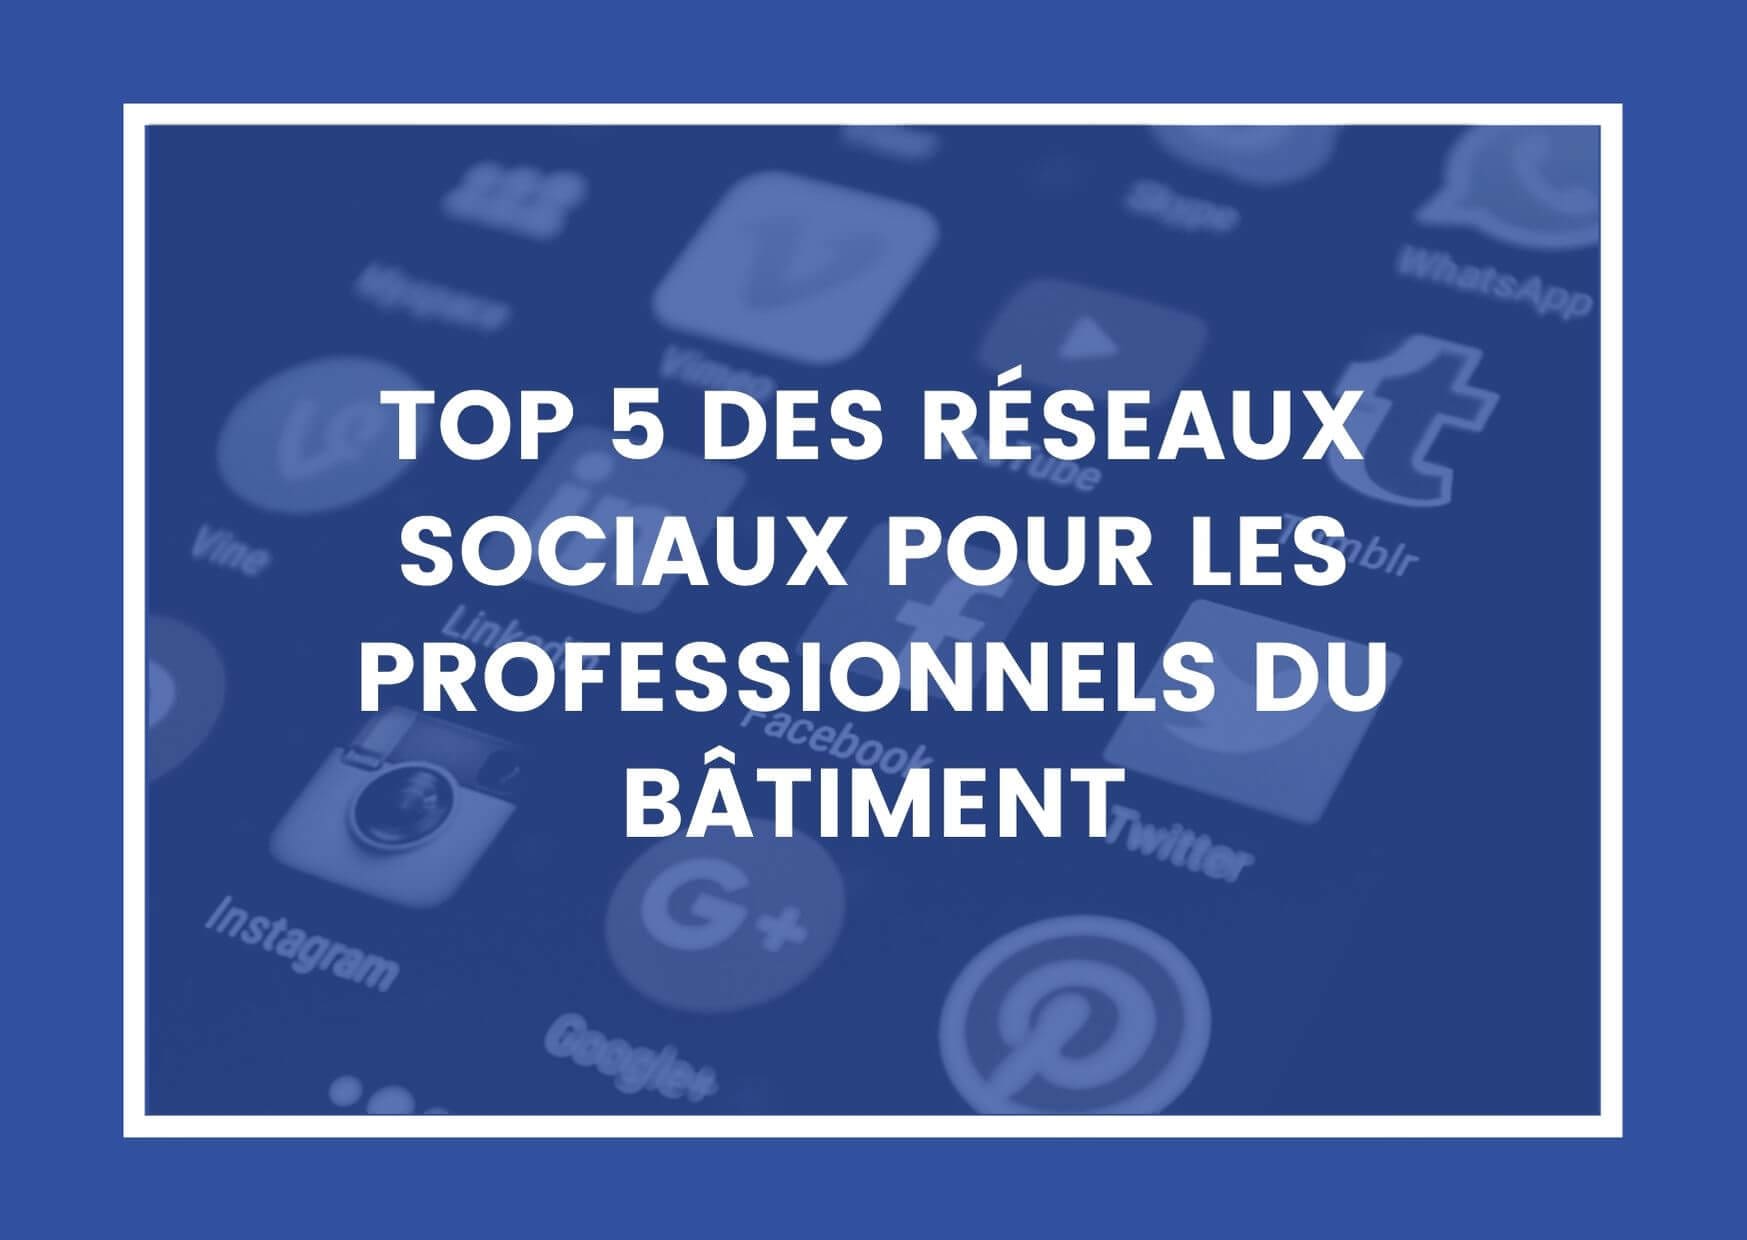 TOP 5 DES RÉSEAUX SOCIAUX POUR LES PROFESSIONNELS DU BÂTIMENT